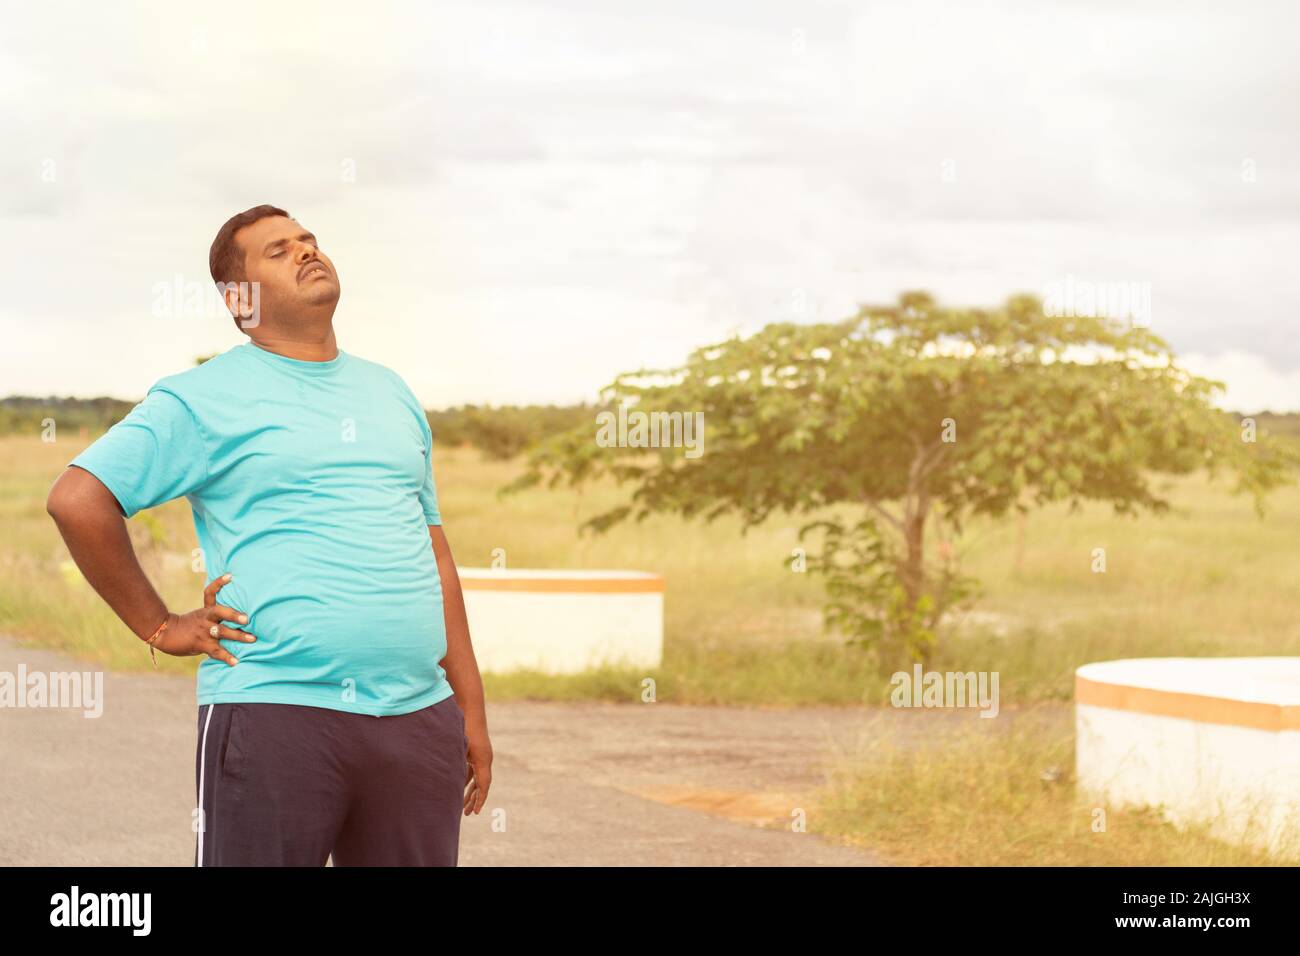 Stanco giovane uomo obesi holiding schiena durante il jogging - Concetto di uomo grasso fitness e uno stile di vita poco salutare. Foto Stock